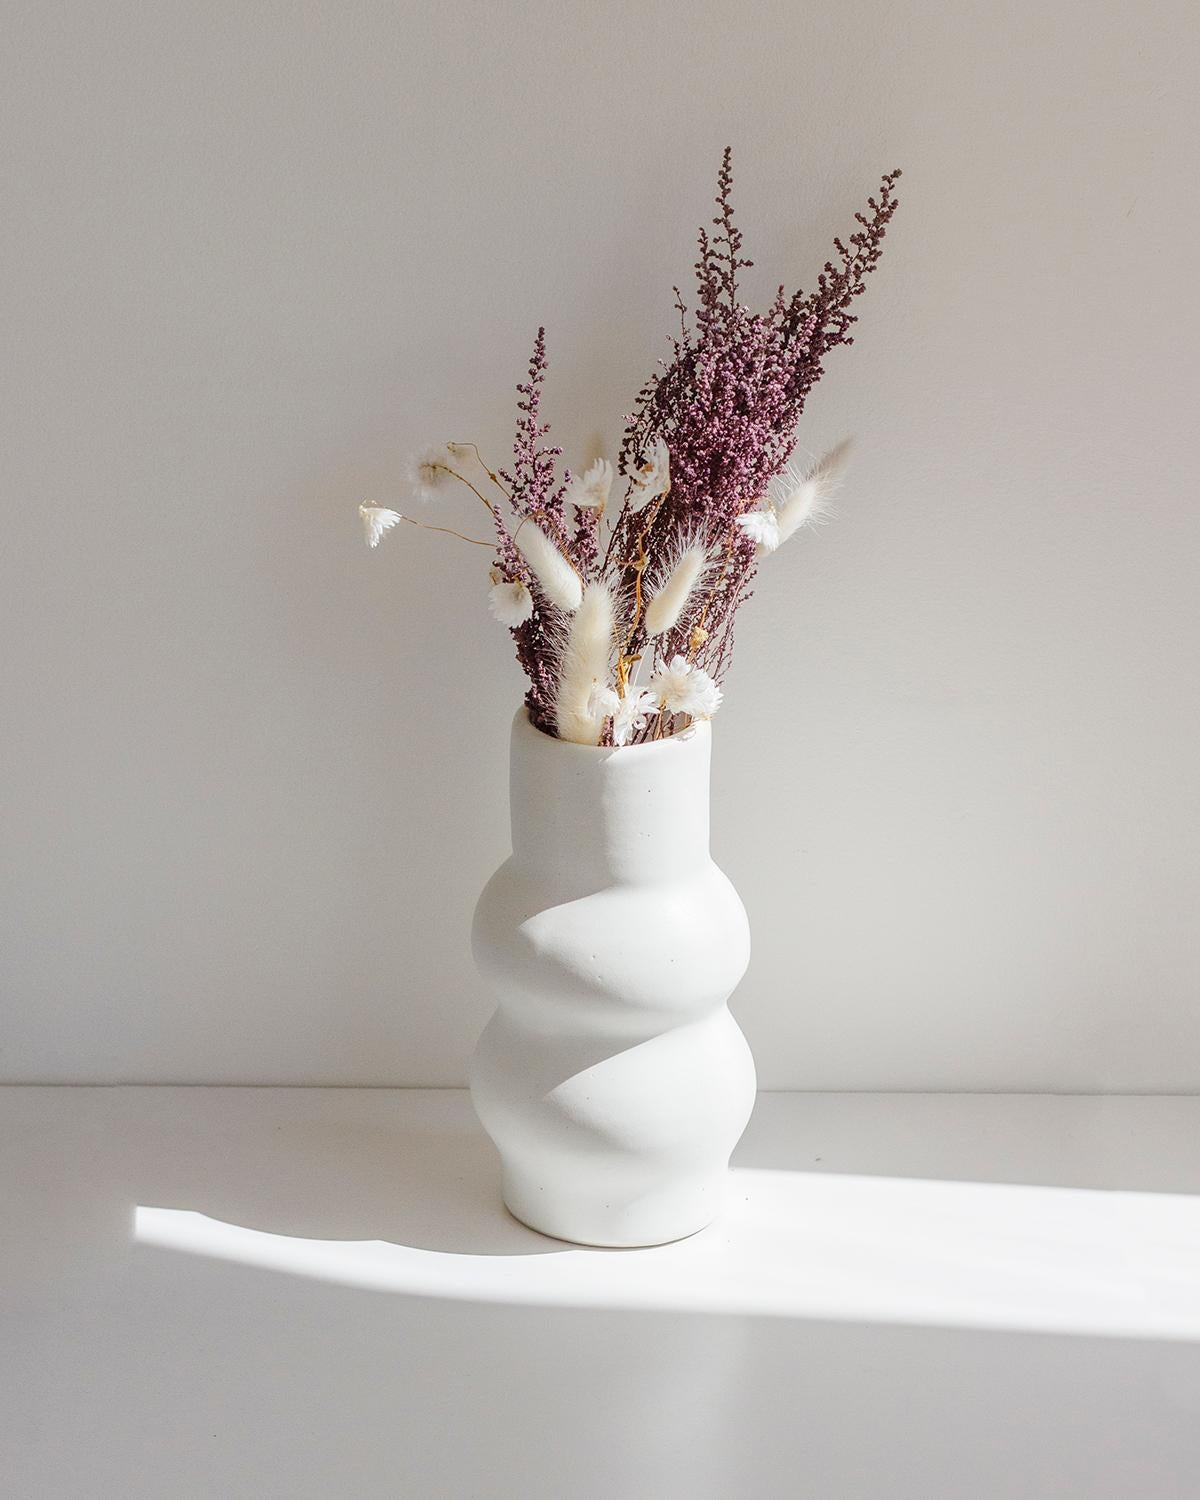 Ce vase en argile d'une beauté unique a été conçu par Camila Apaez et fabriqué à la main dans son atelier artisanal dirigé par des femmes à Guadalajara, au Mexique.

Ce modèle est également disponible en marron.

Un seul exemplaire de chaque design